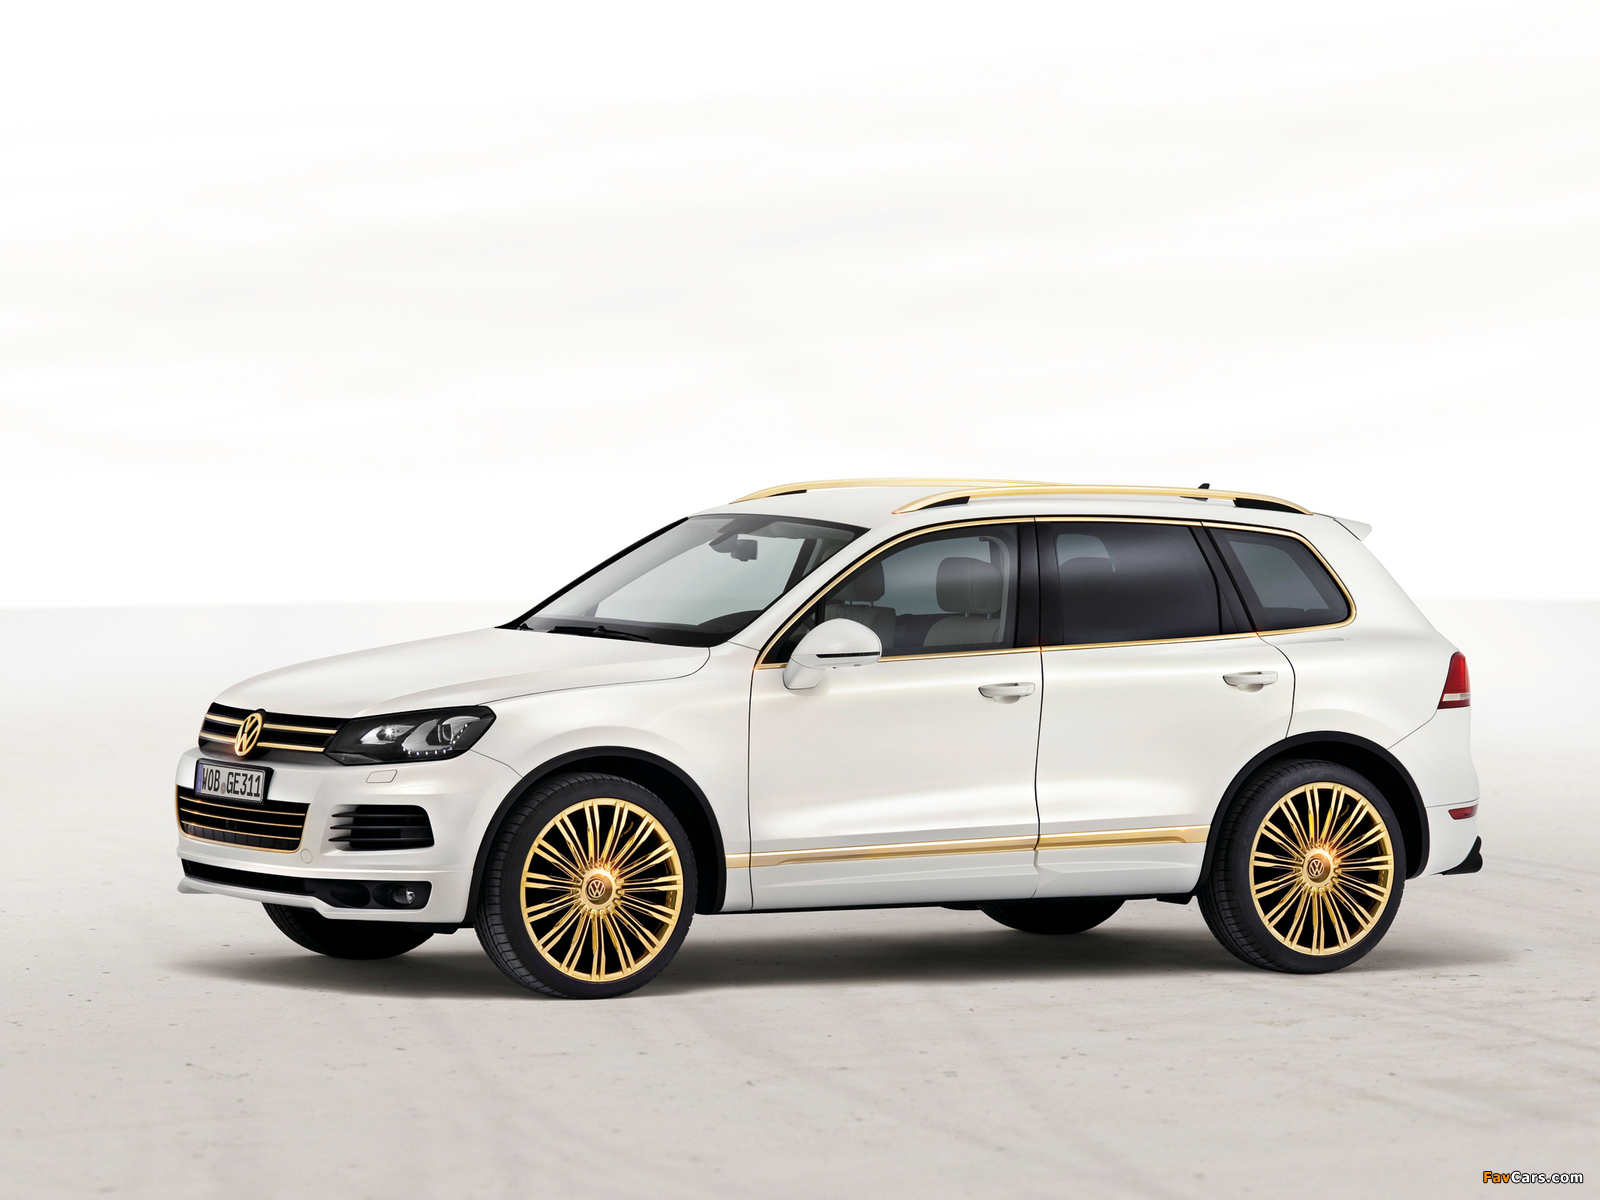 Volkswagen Touareg V8 TDI Gold Edition Concept 2011 photos (1600 x 1200)